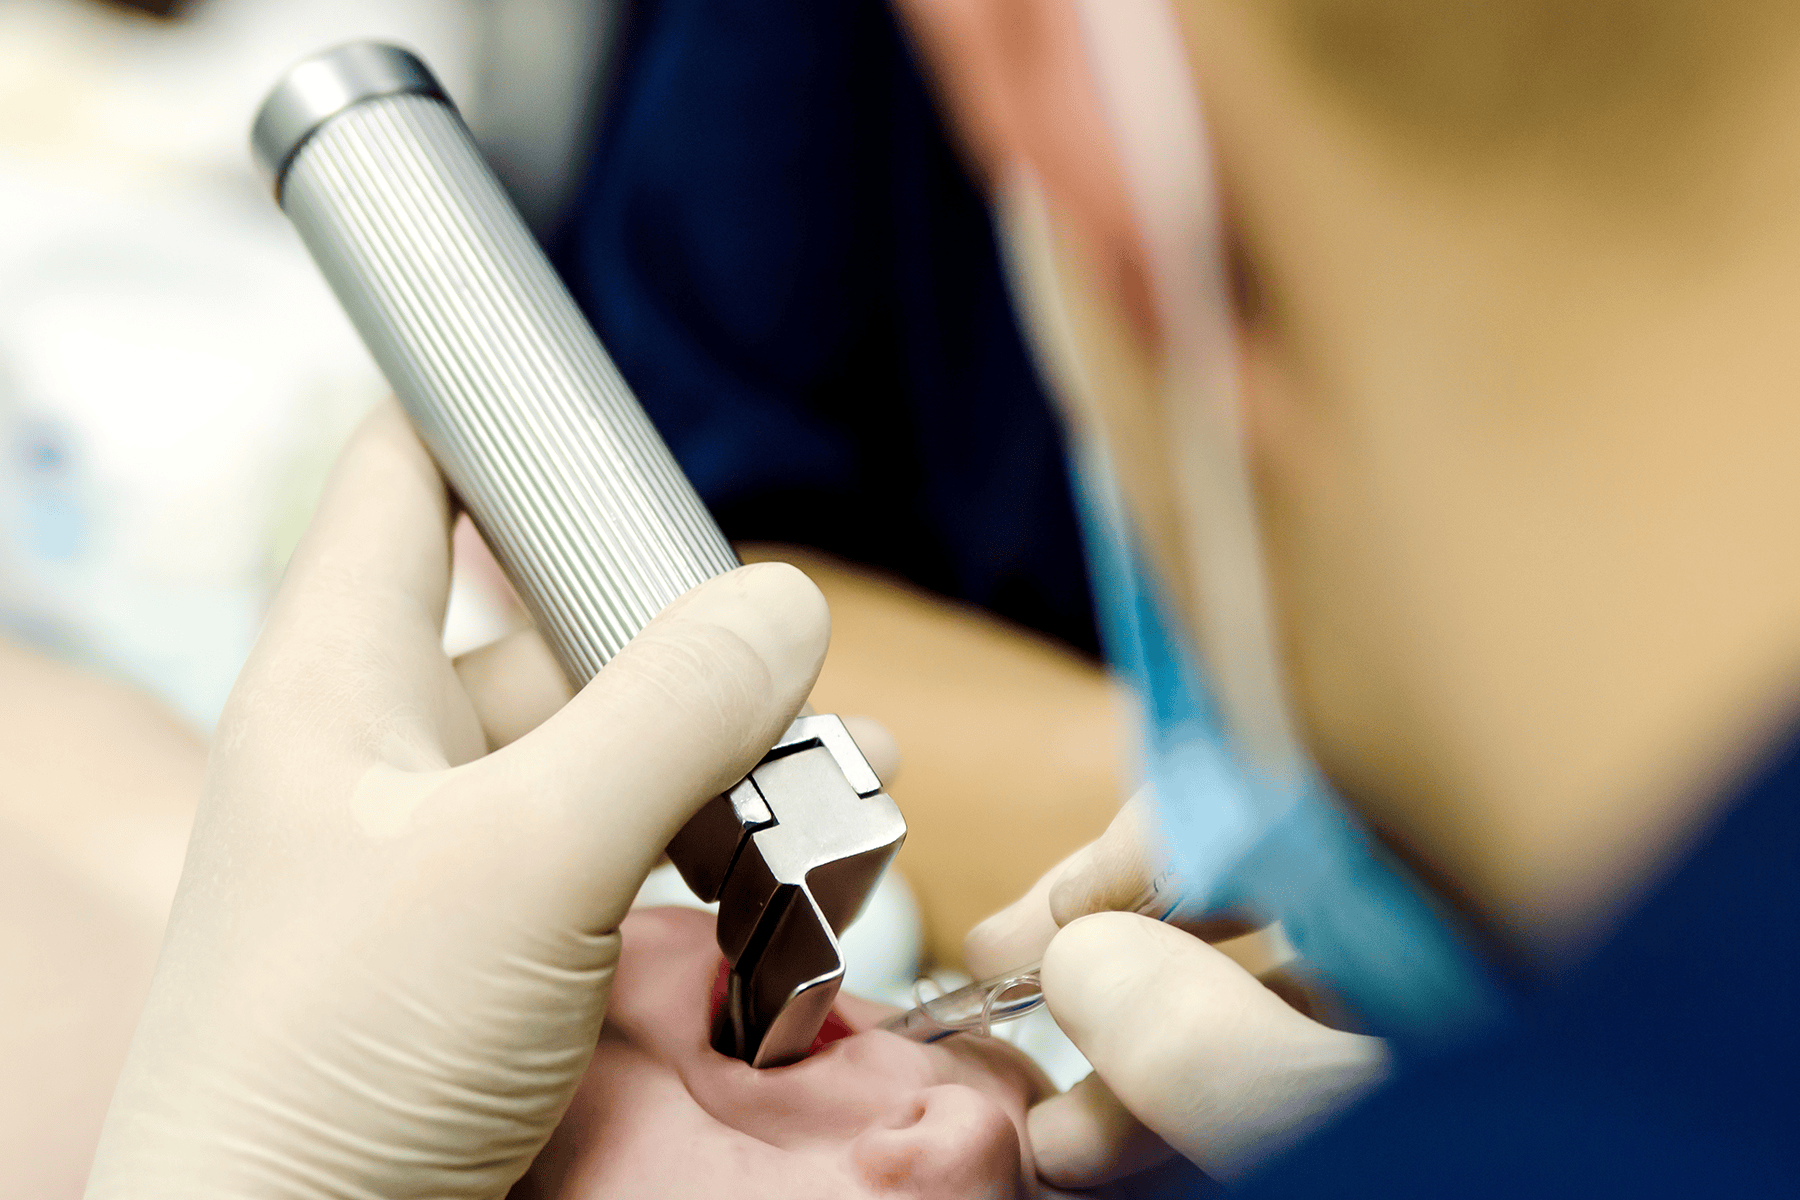 Intubation Injury Lawsuit